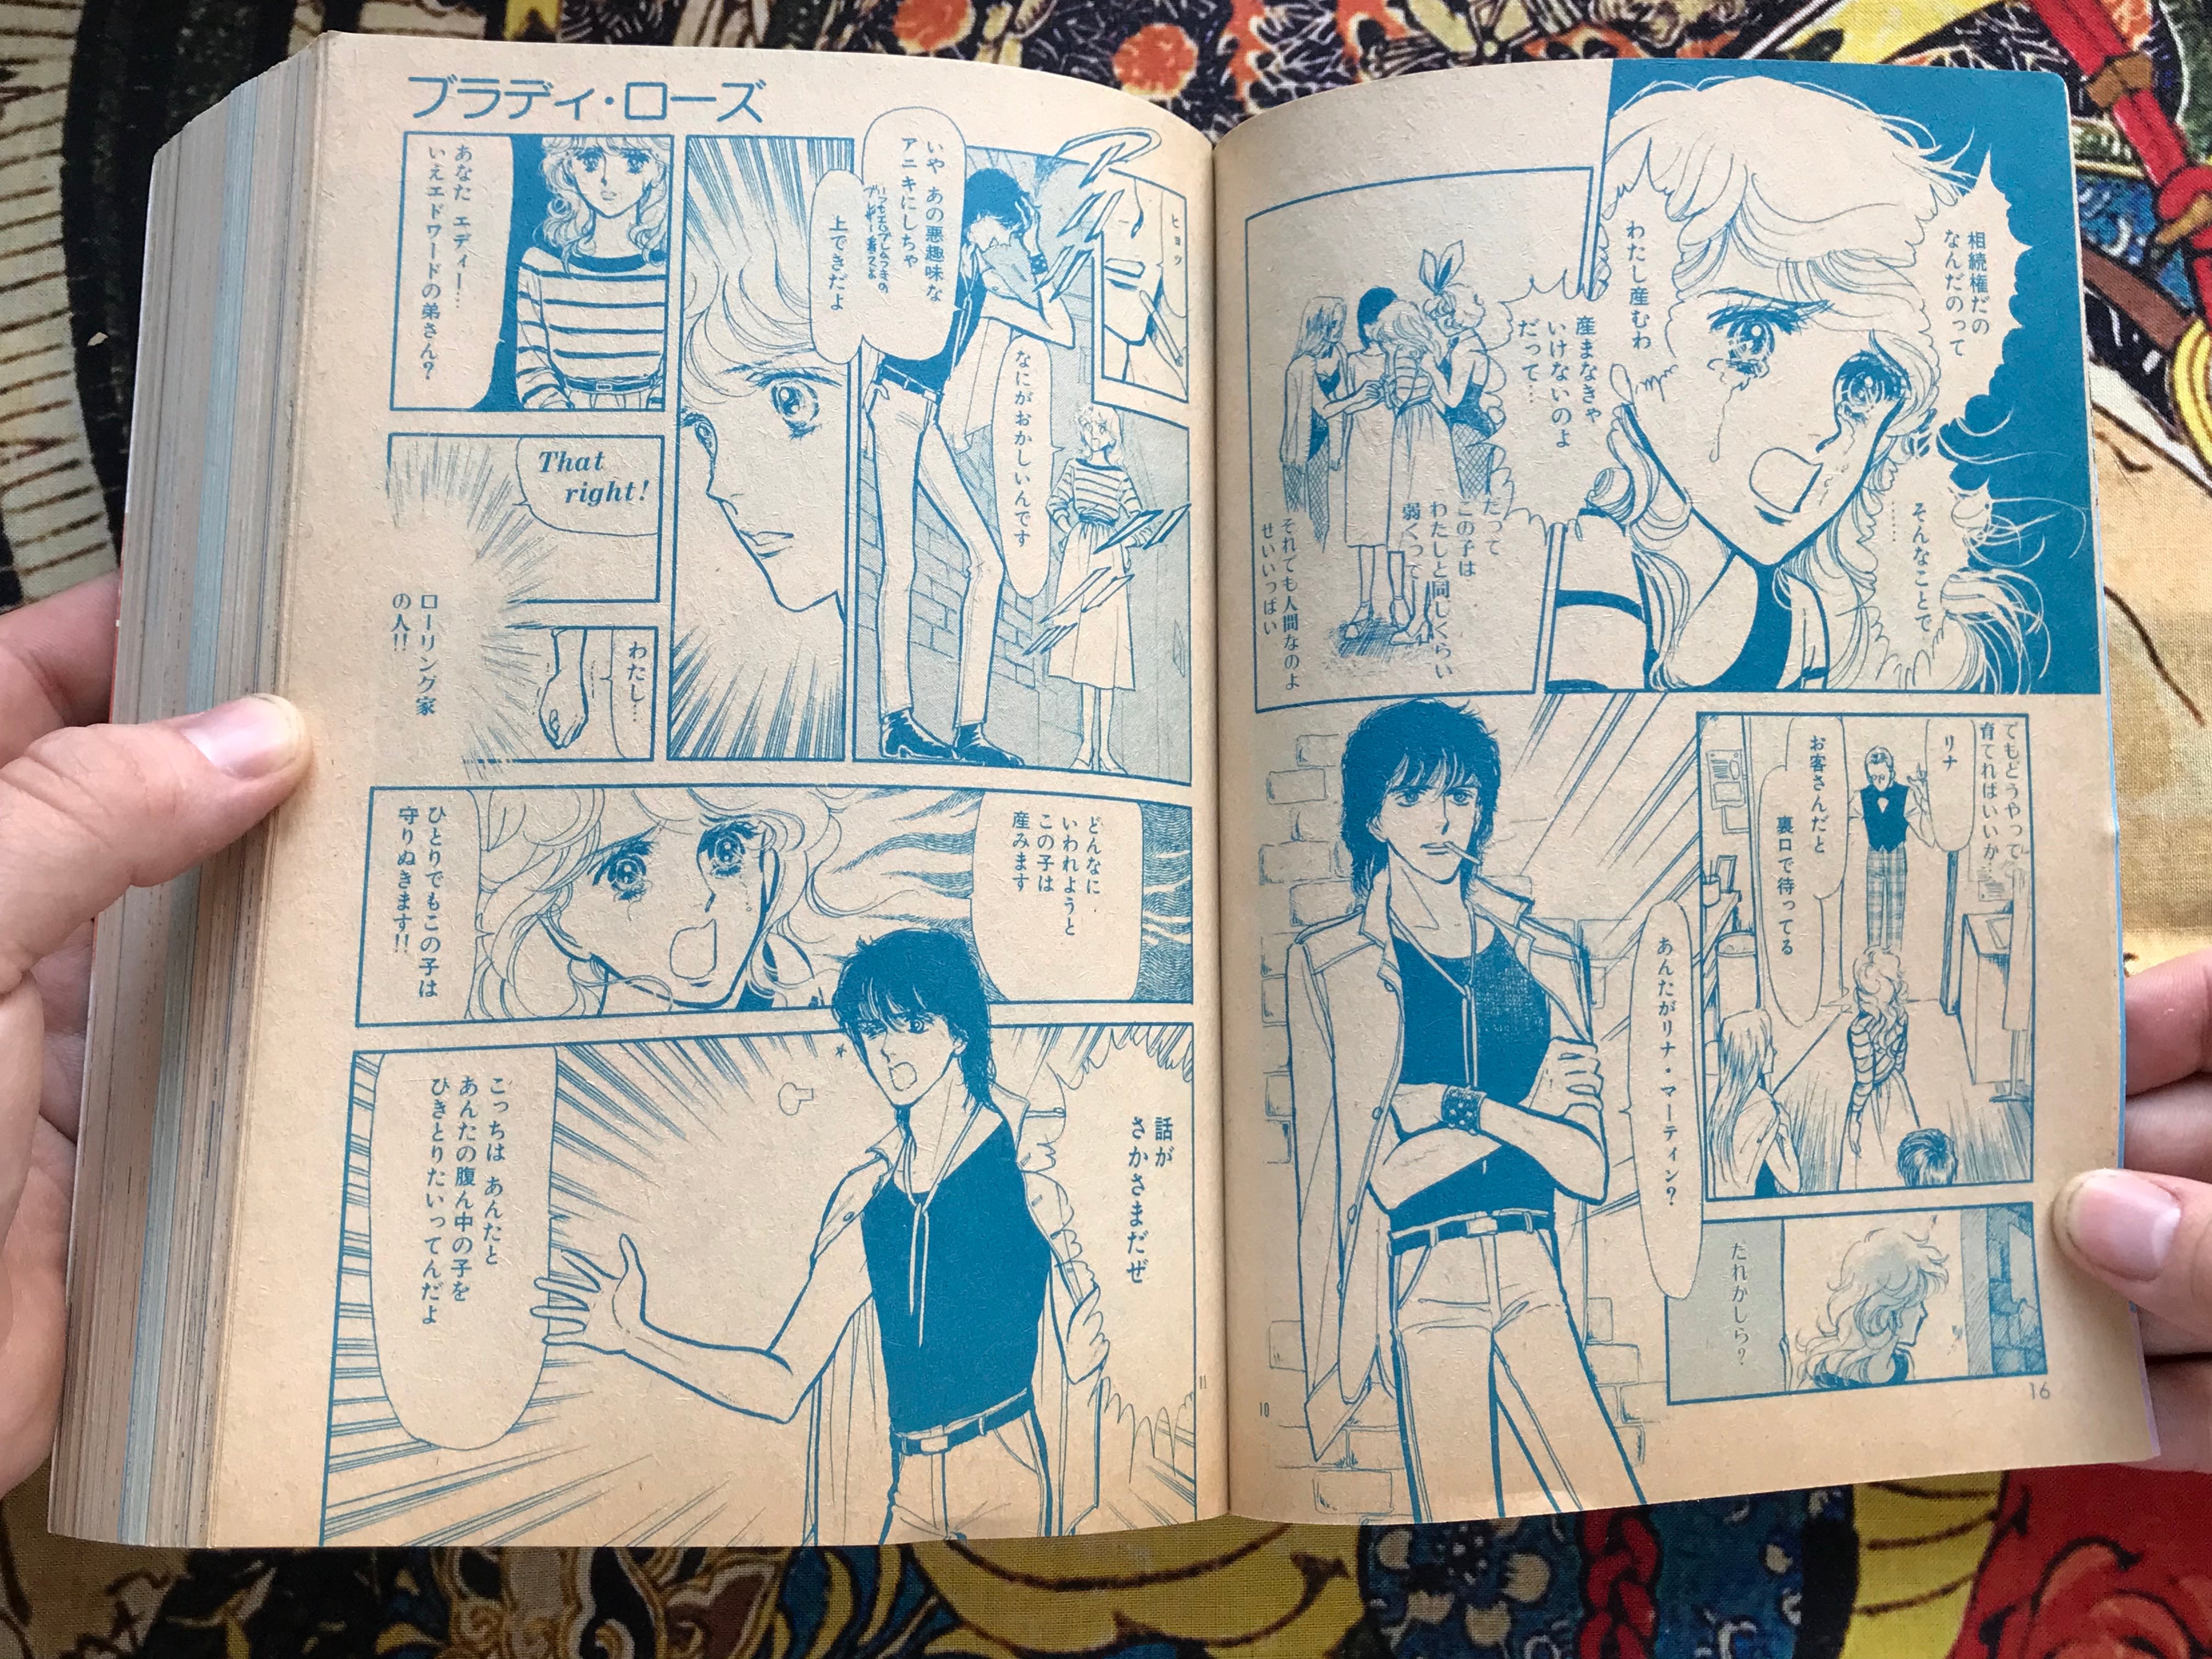 Seventeen Manga Magazine 8 (1982)